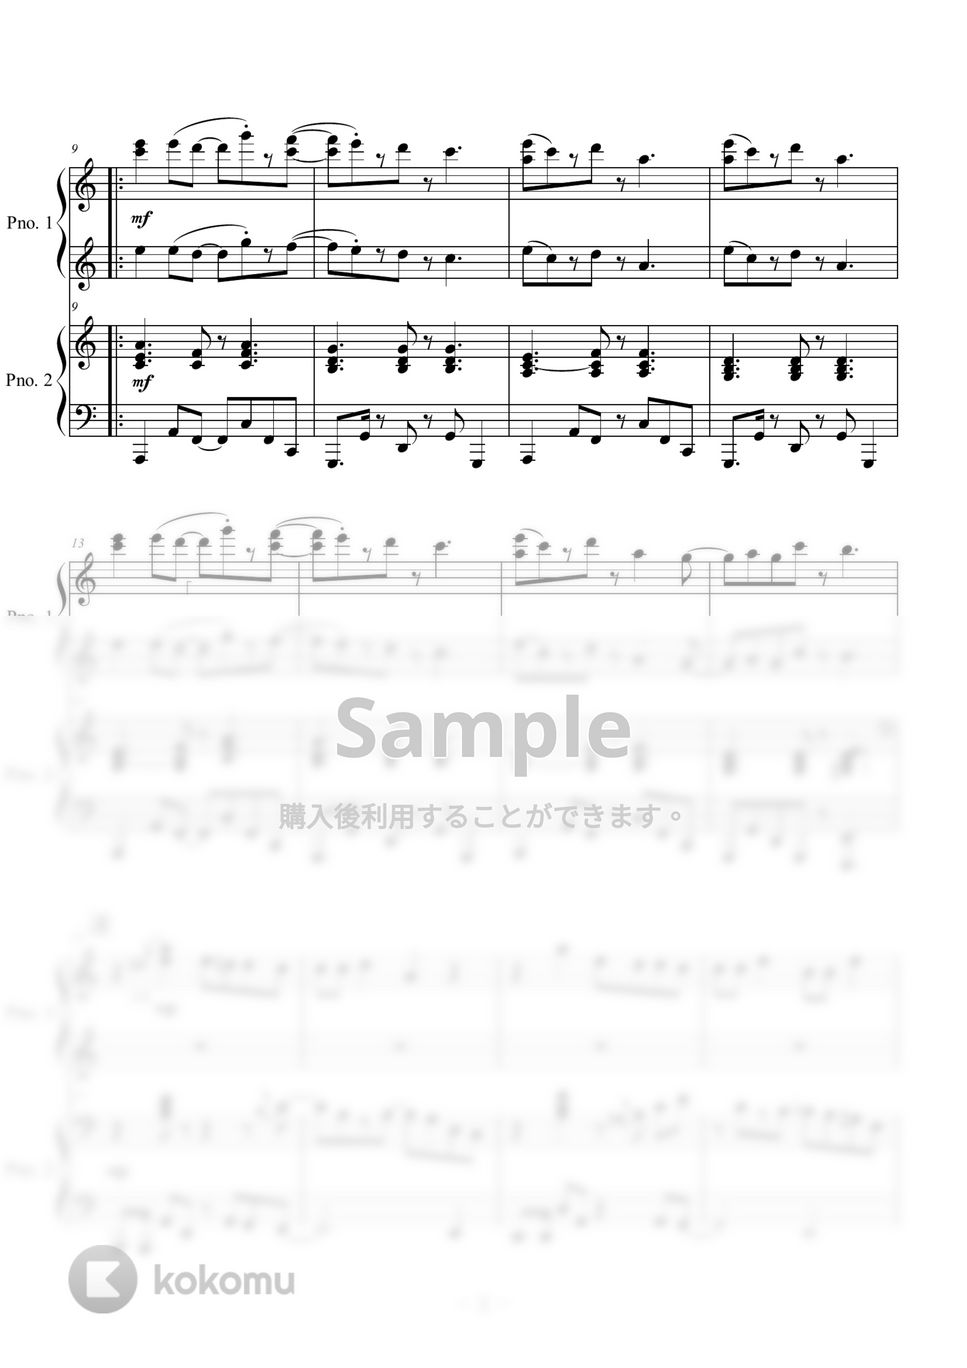 鬼滅の刃 - 残響散歌 (ピアノ連弾) by Kishinchan